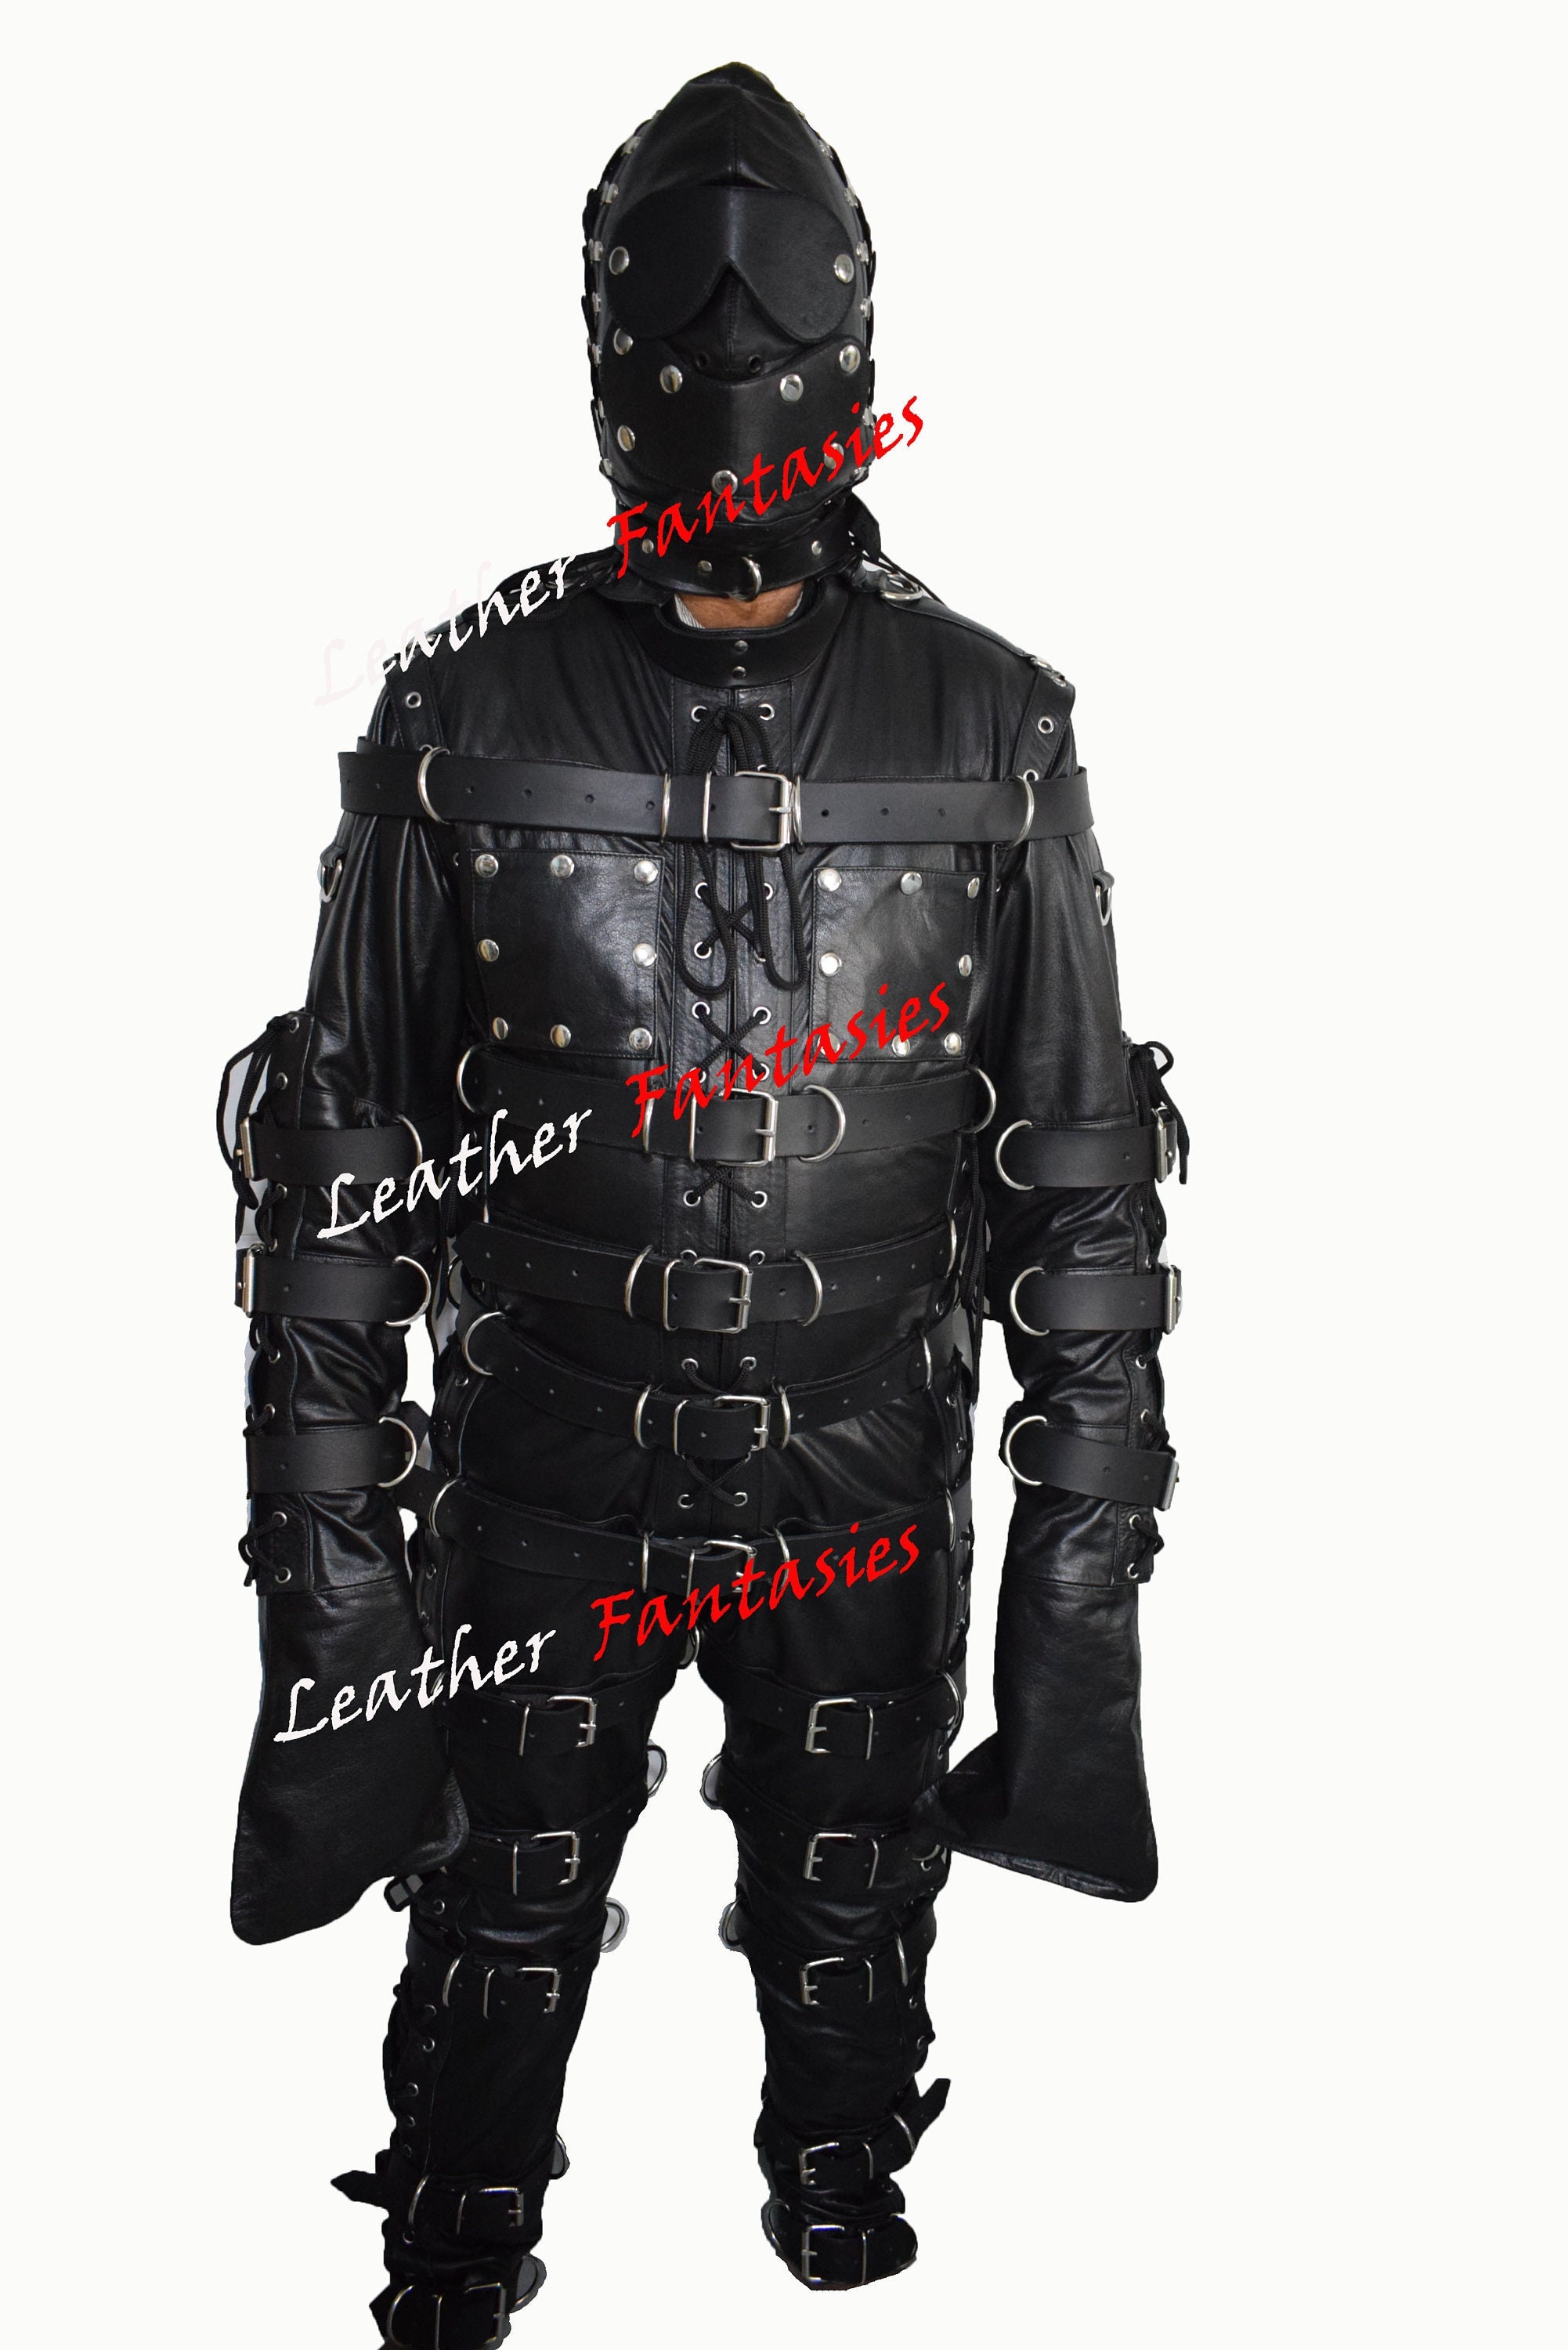 Leather bondage suit